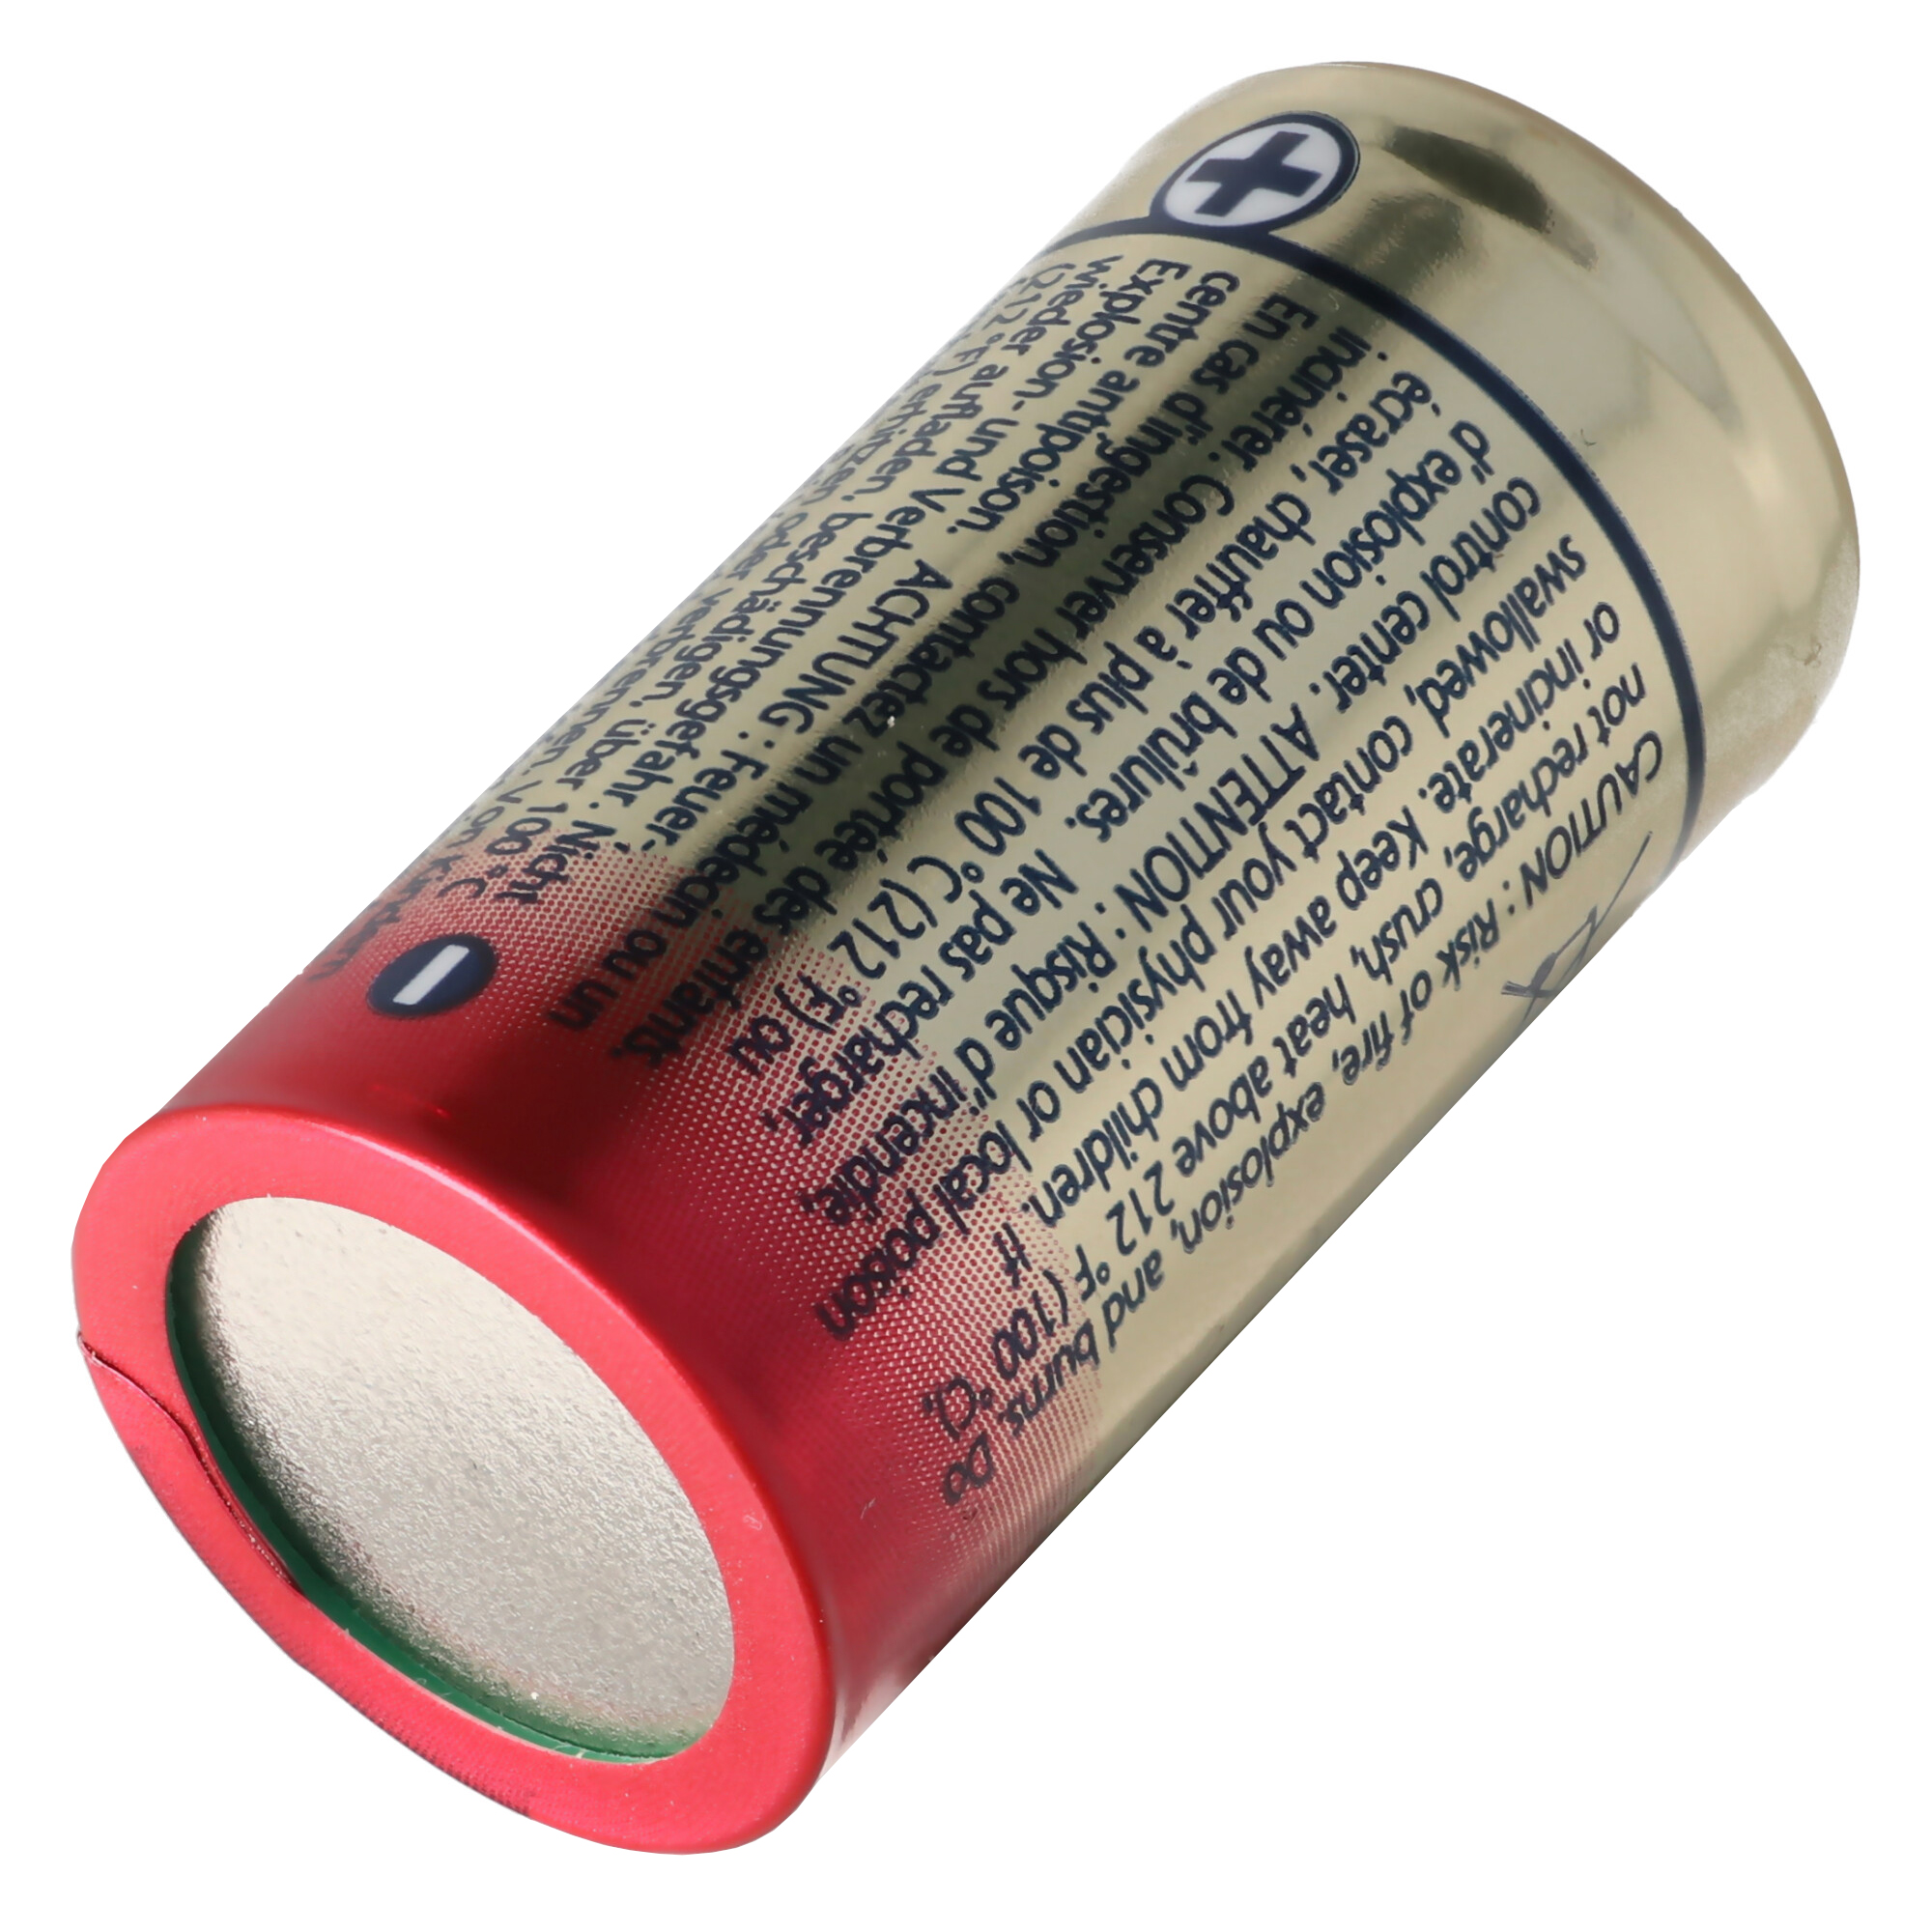 Ersatzbatterie secuENTRY-Zylinder Lithium CR 123A Batterie von Panasonic